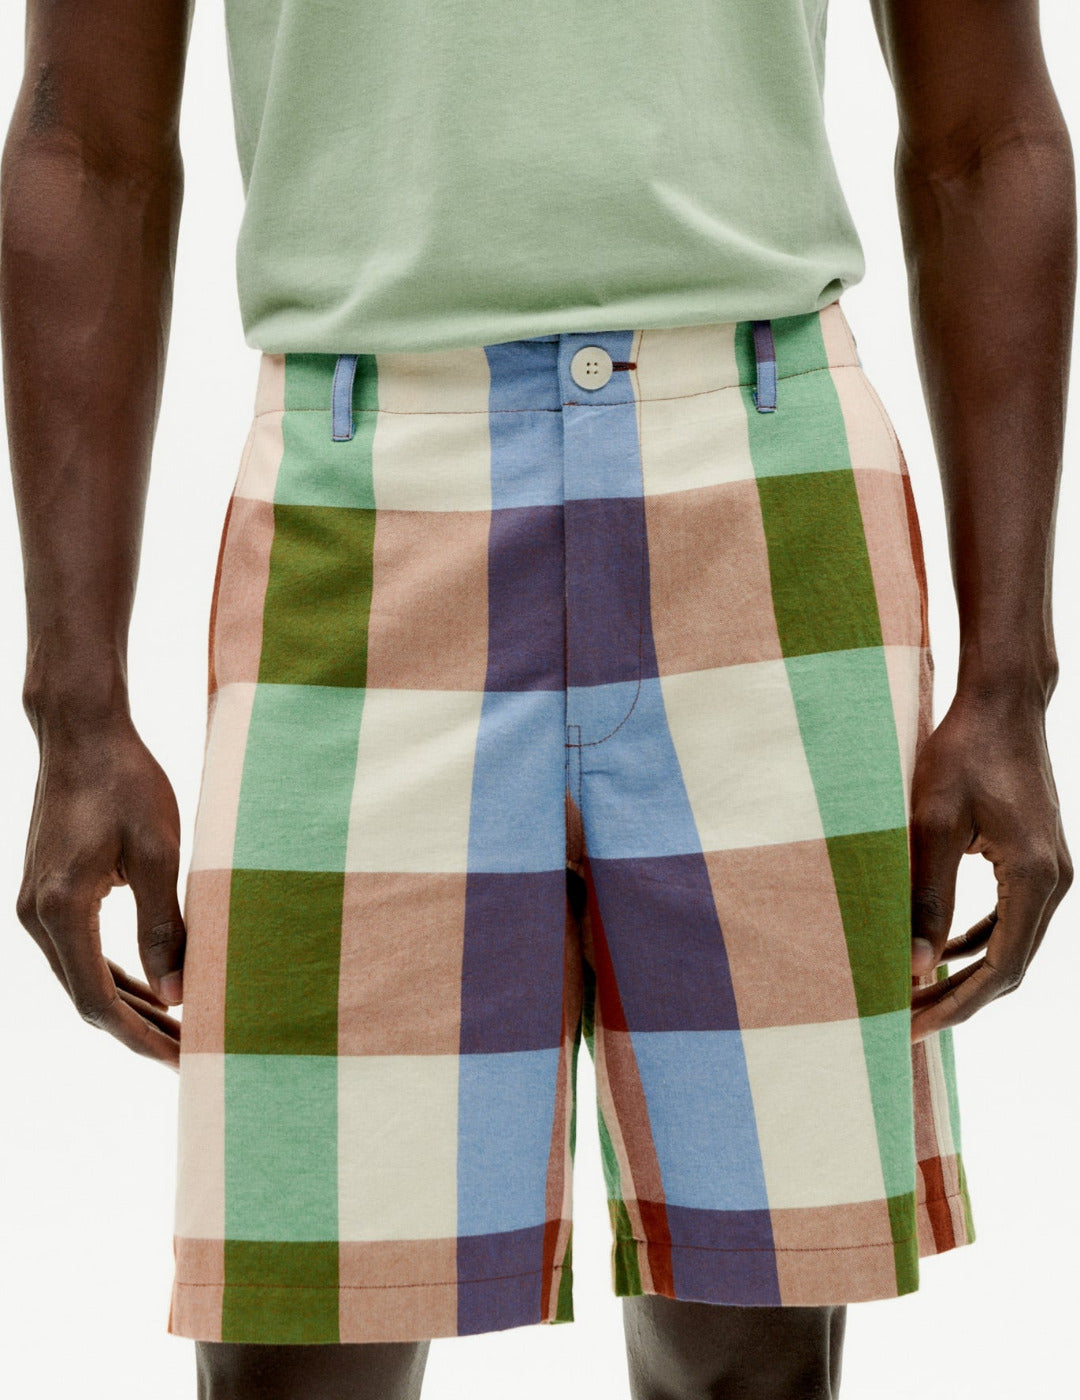 Multicolor Alex bermuda shorts